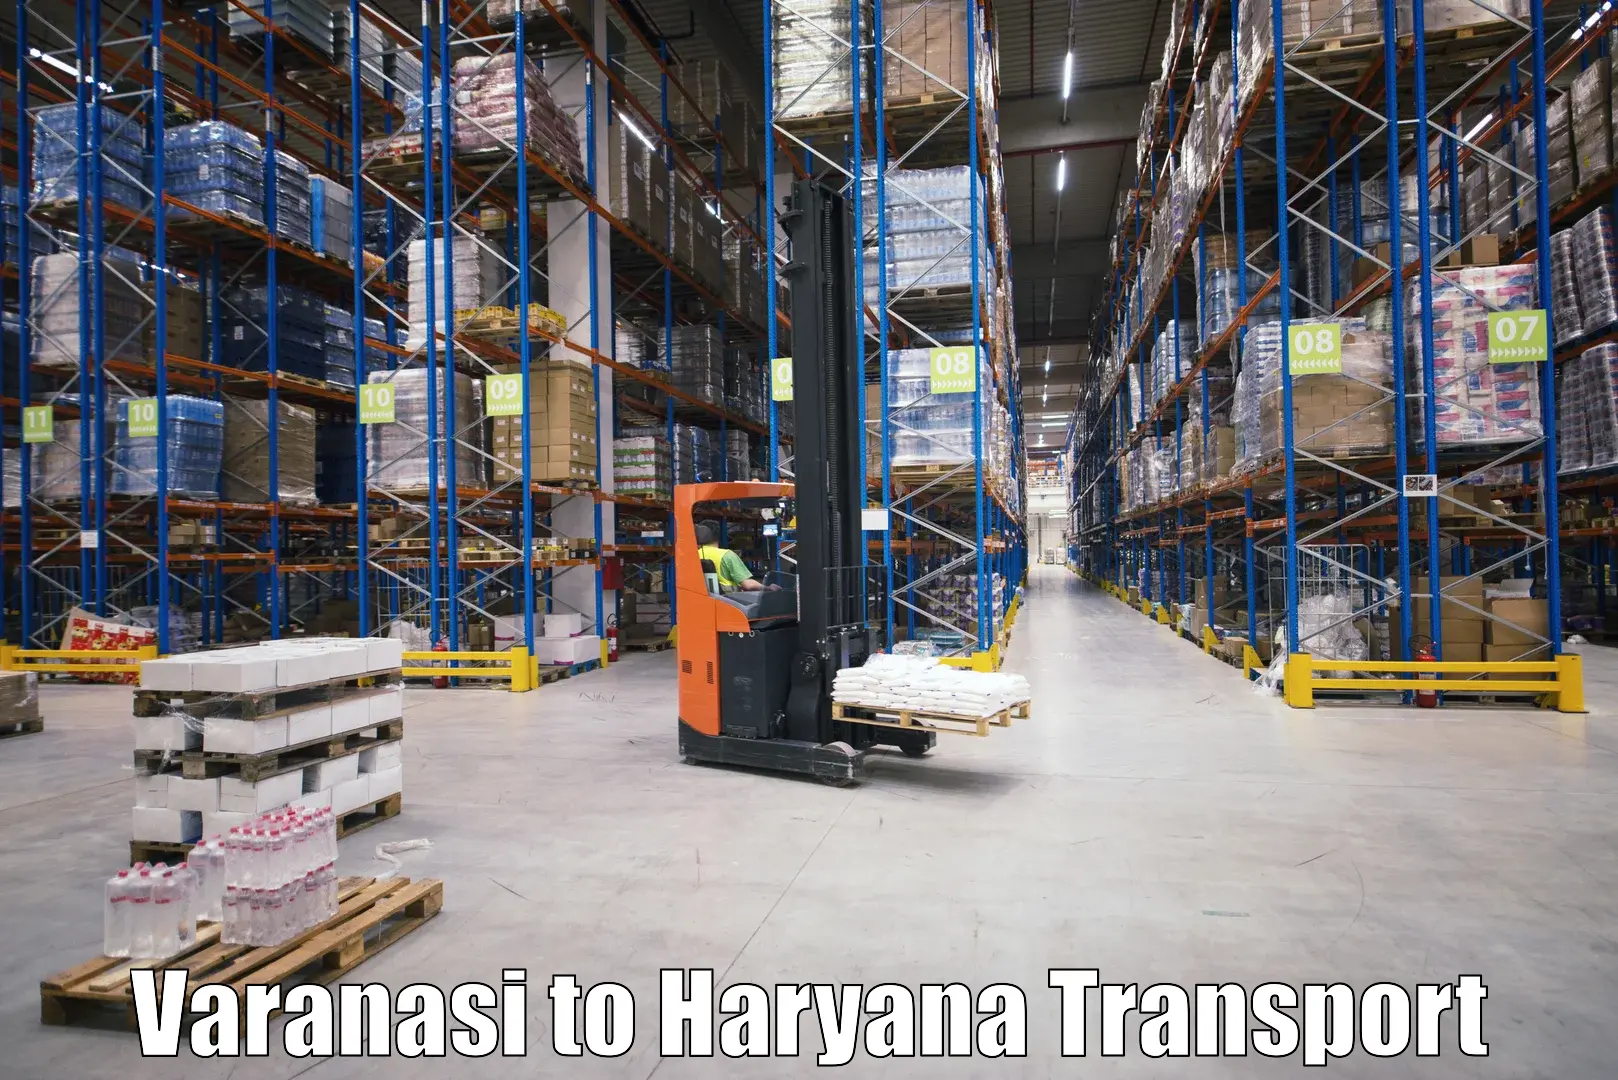 Land transport services Varanasi to Jhajjar